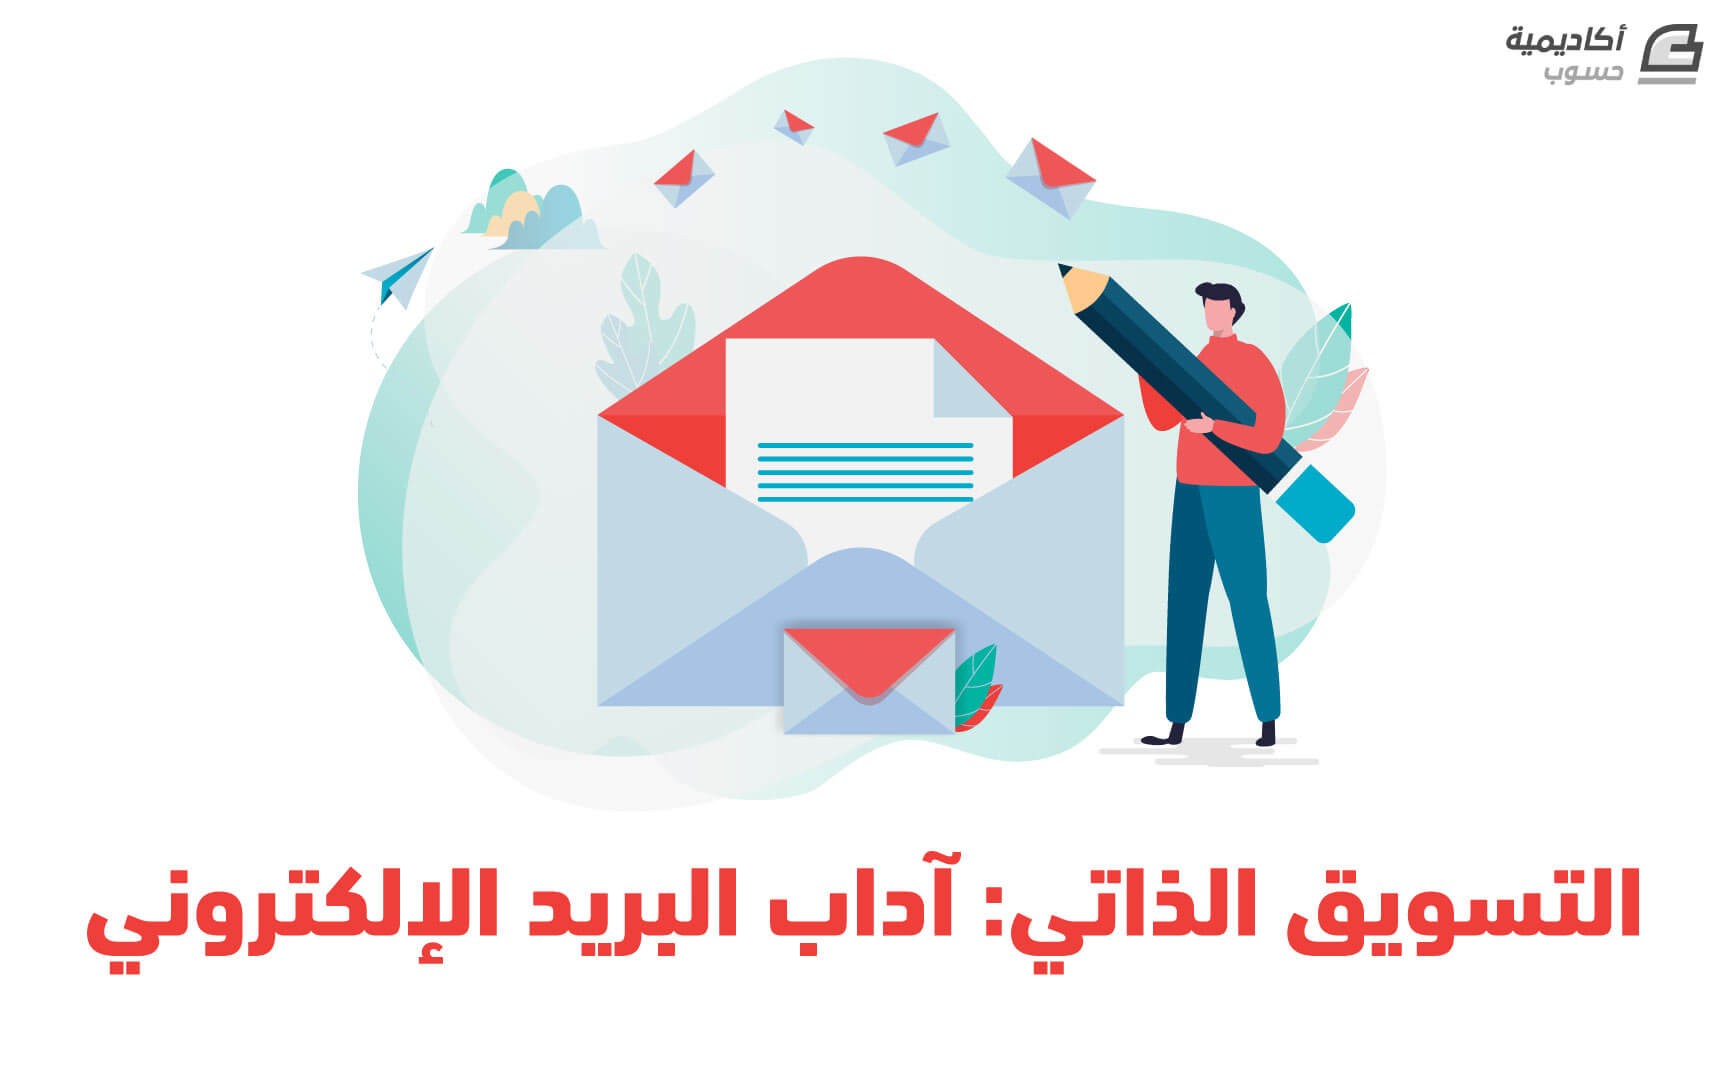 مزيد من المعلومات حول "الترويج للعملاء المستقلين: آداب البريد الإلكتروني"